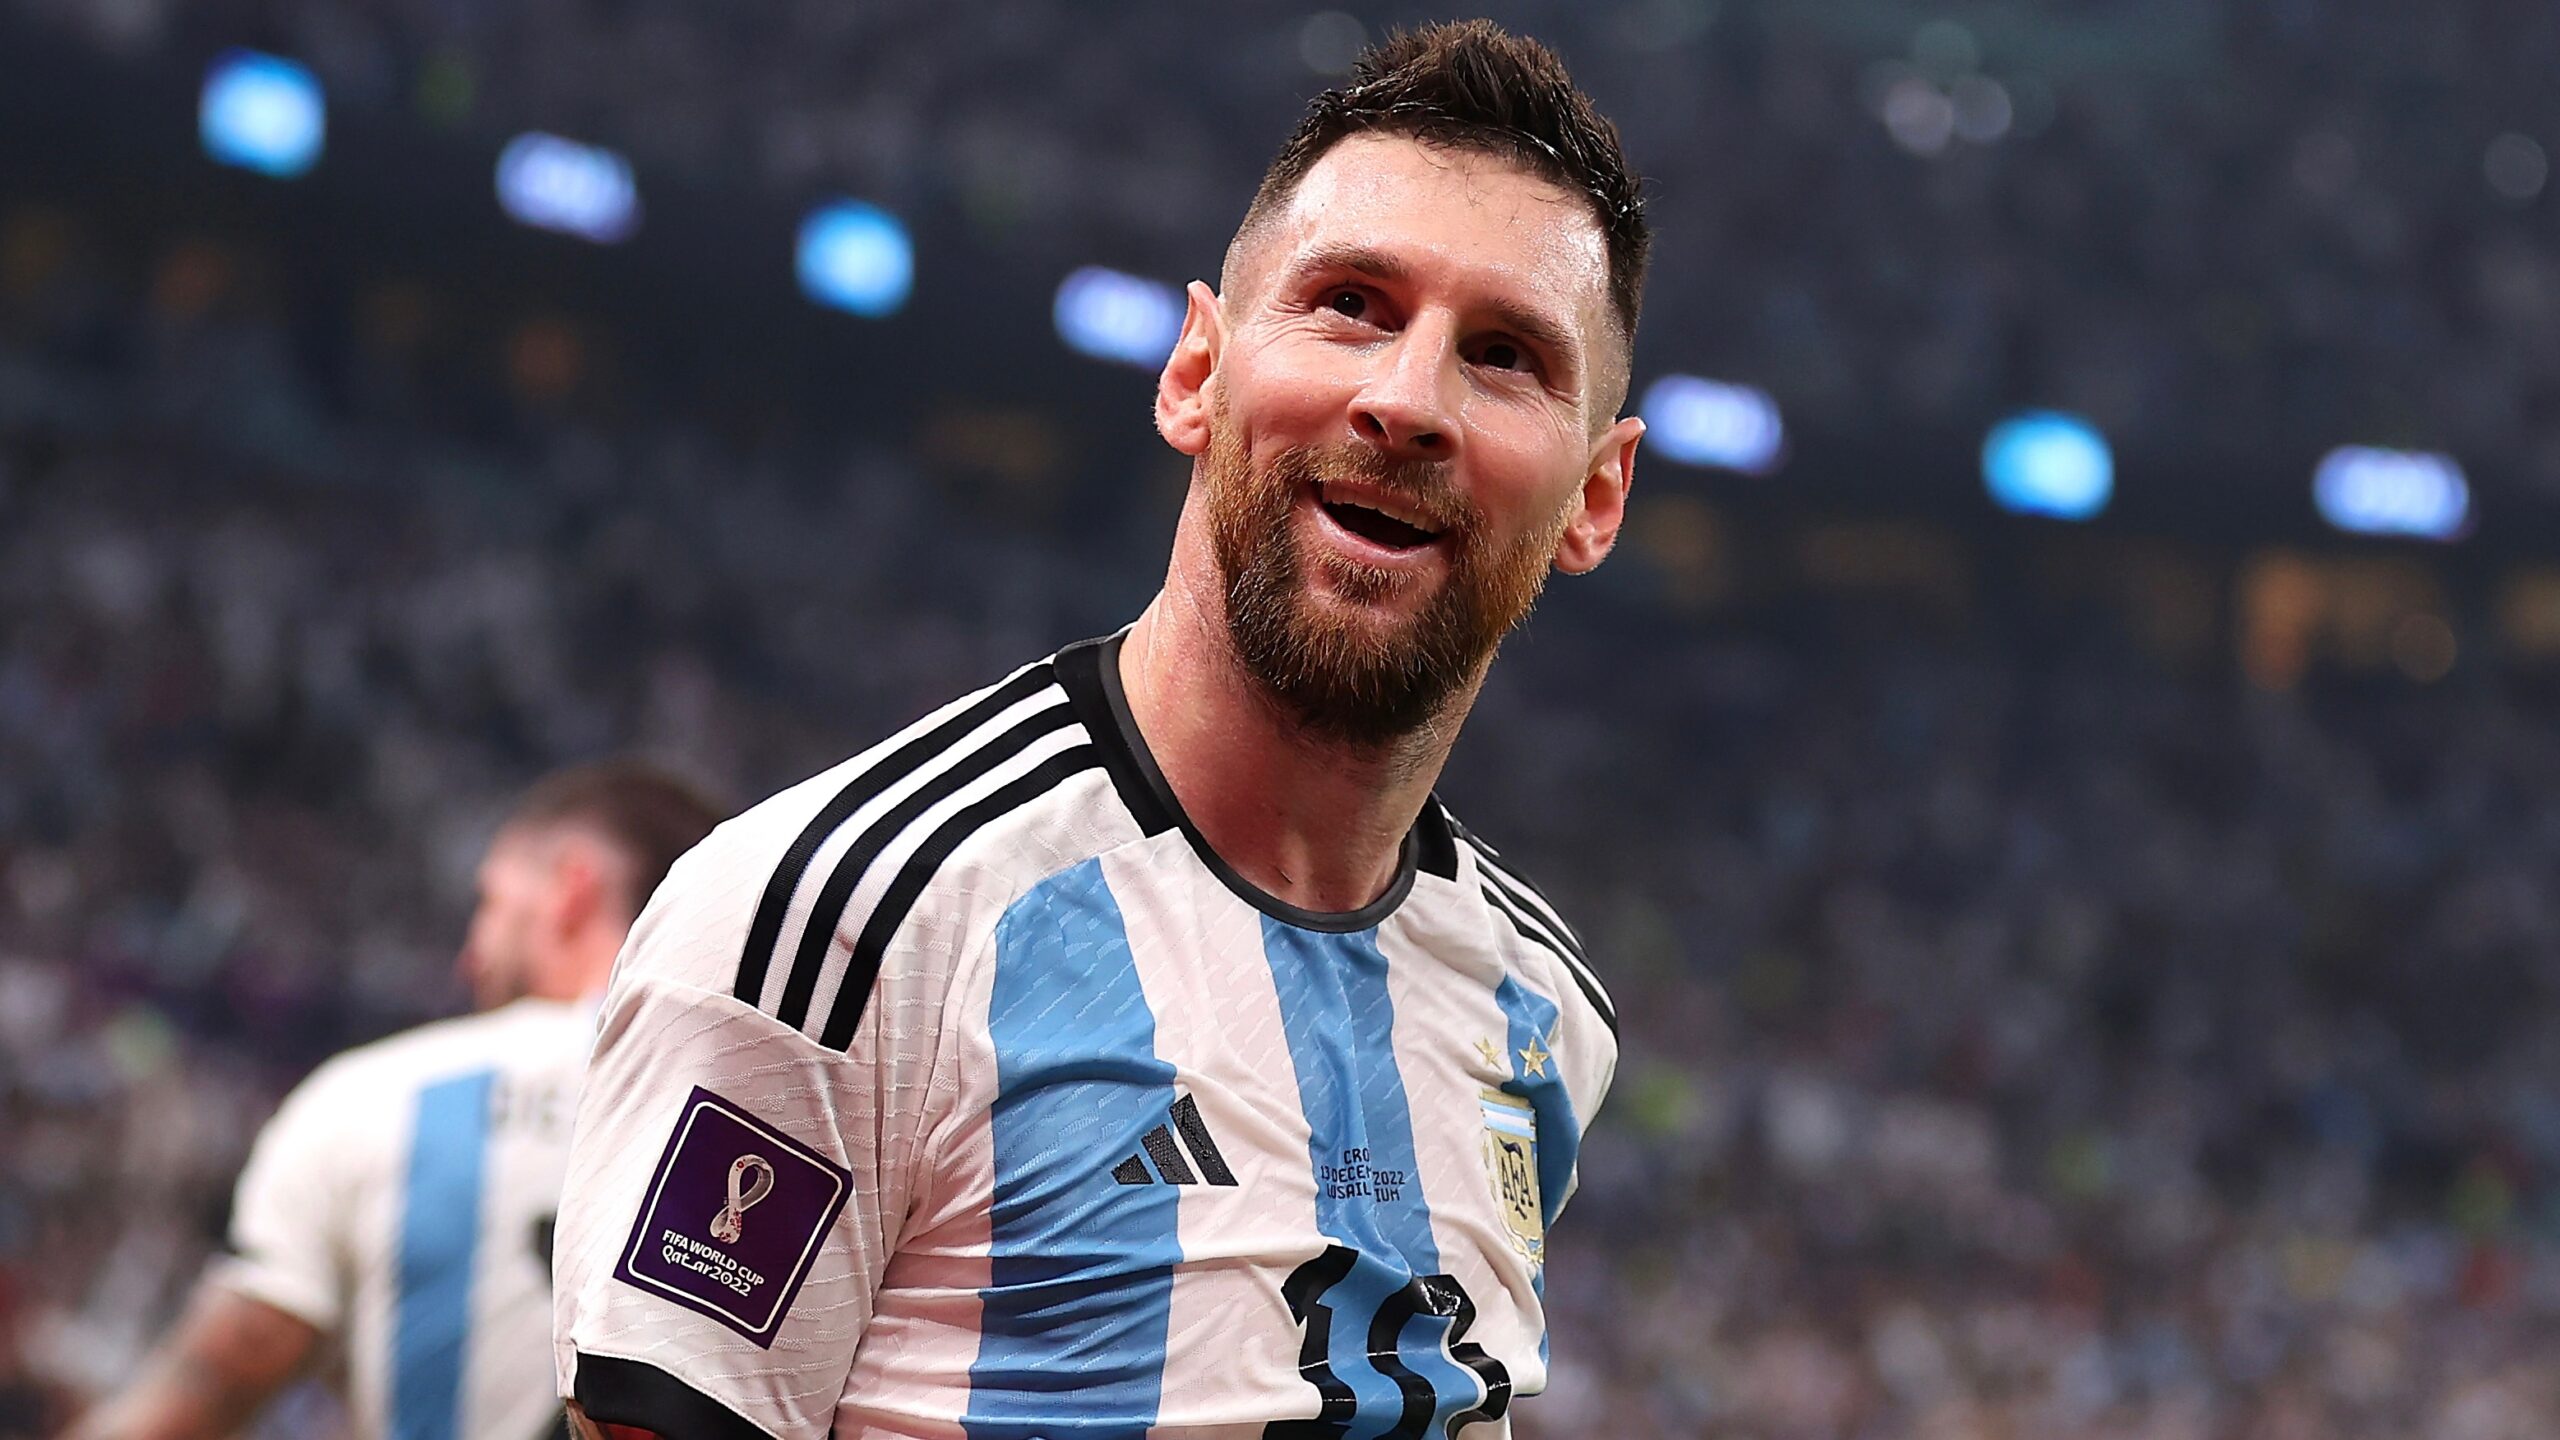 Biodata Lionel Messi, dari Perjalanan Karier hingga Deretan Prestasinya yang Mentereng